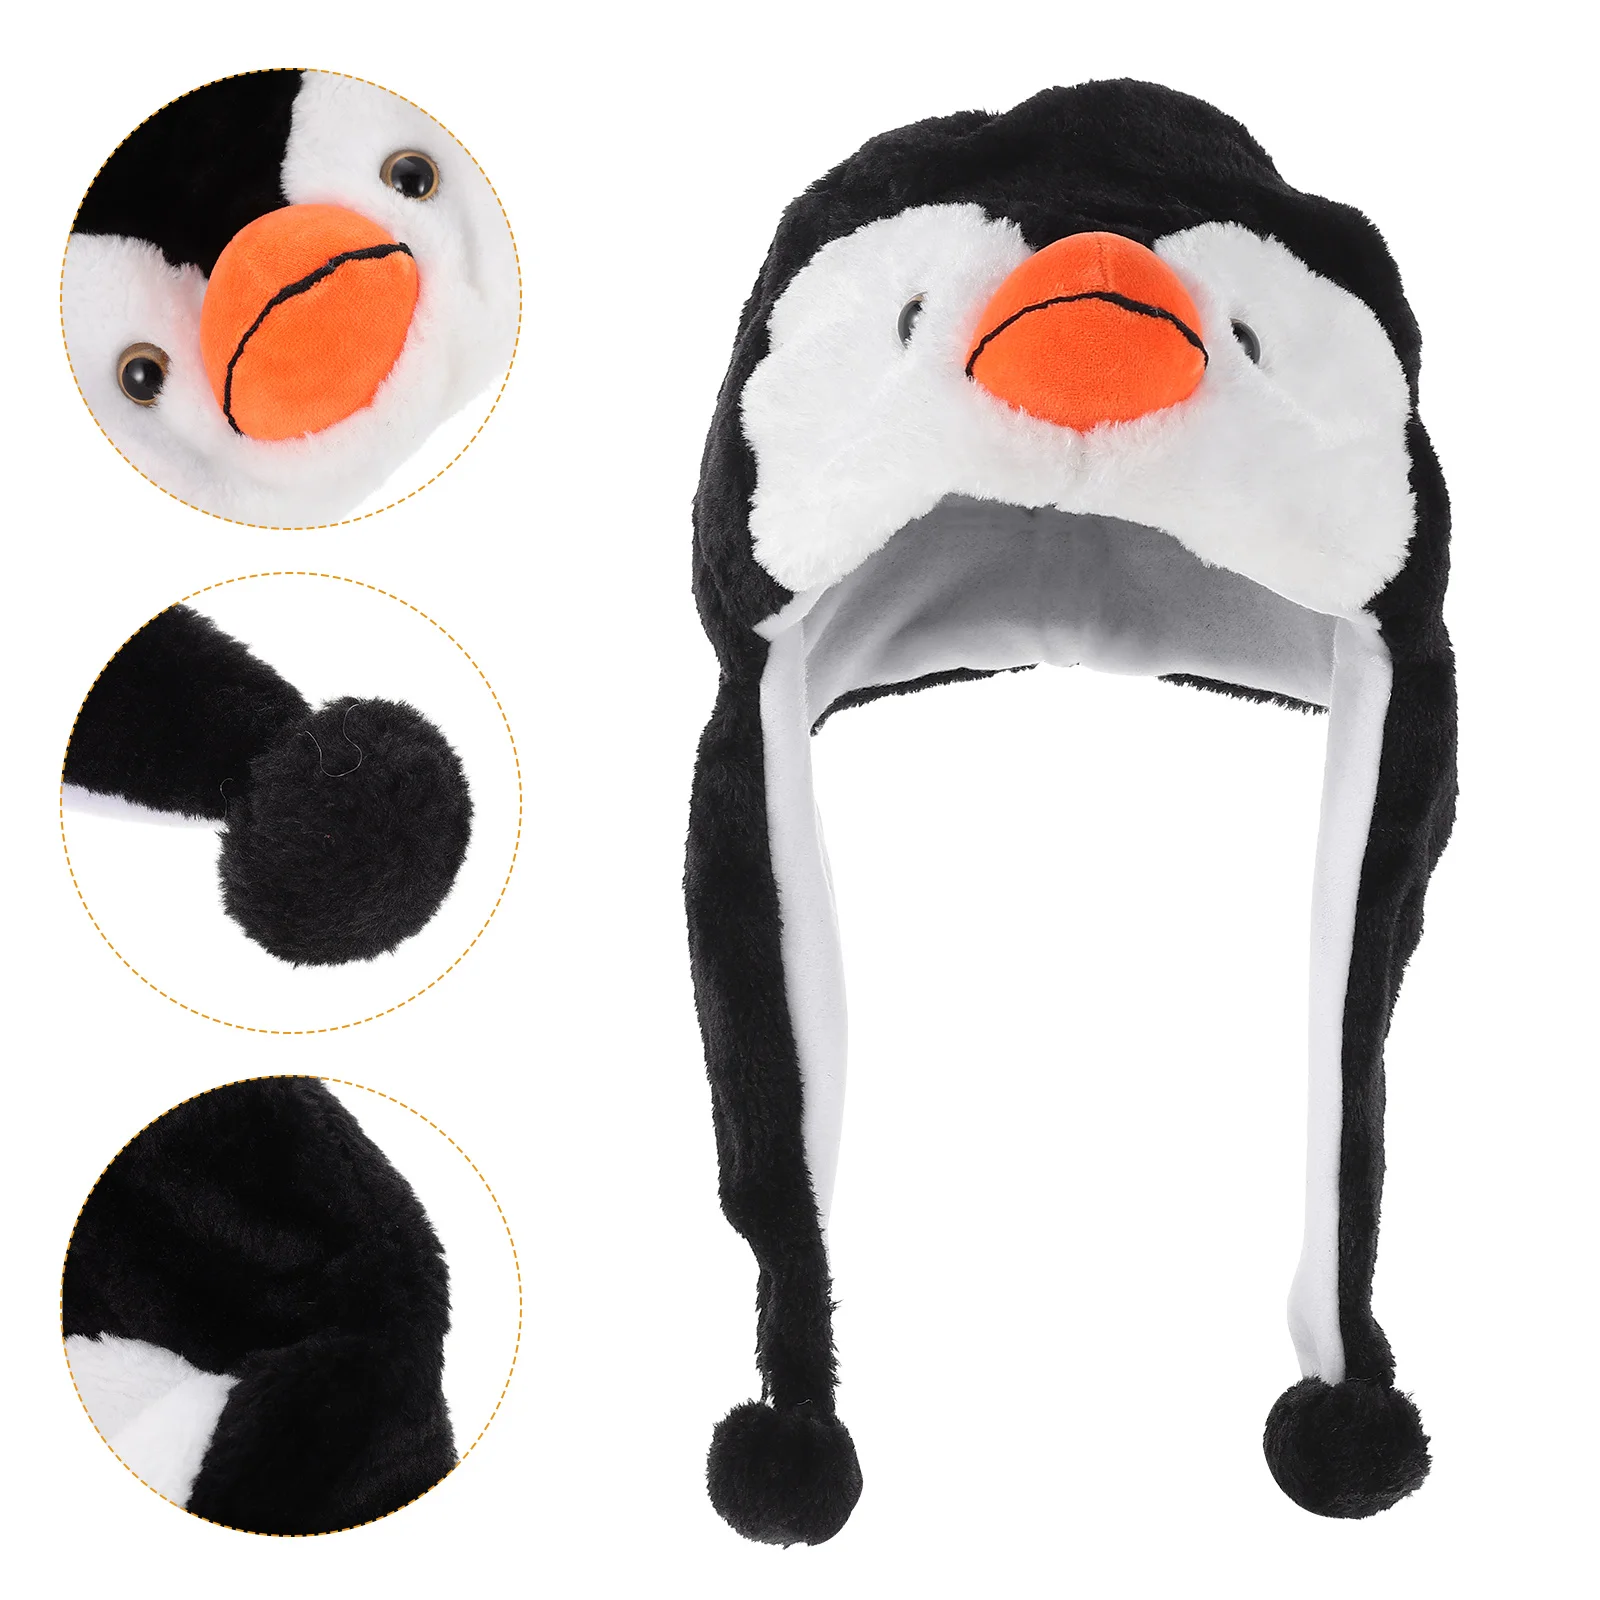 

Women Cute Cartoon Animal Fuzzy Penguin Warm Beanie Hat Winter Men's Thicken Caps Children Kids Boys Girls Fluffy Cosplay Hats